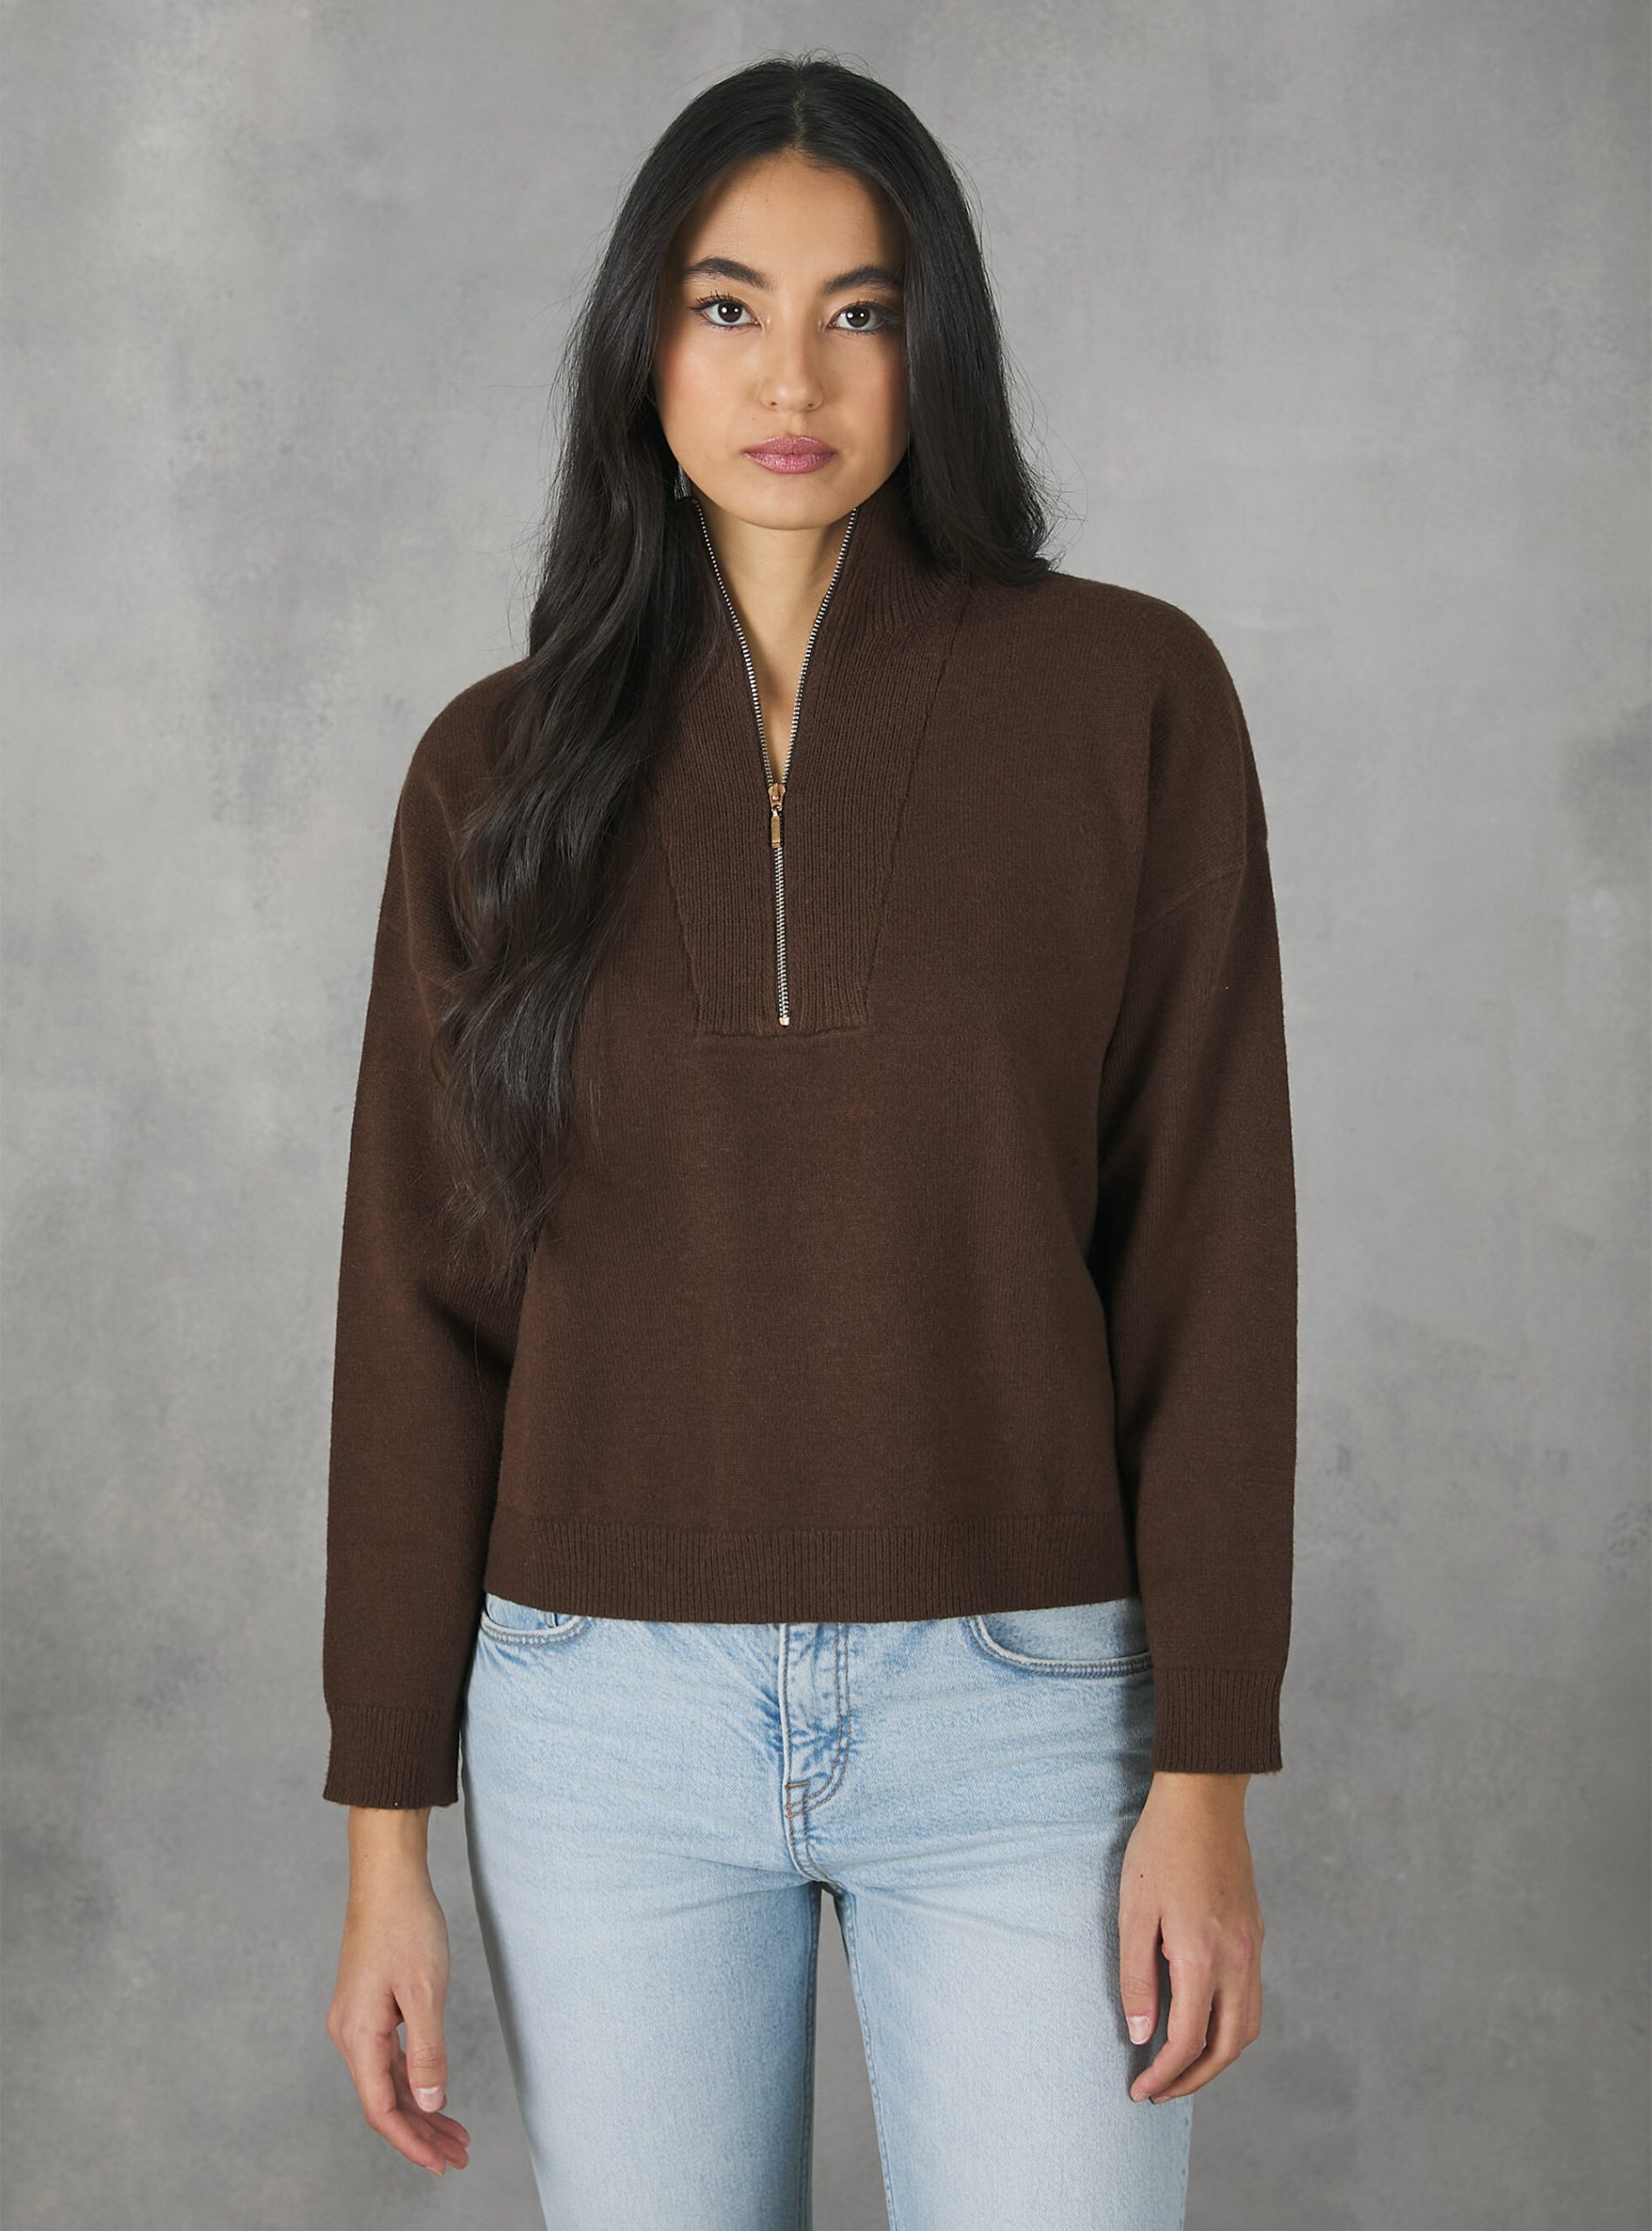 Half-Neck Pullover With Zip Frauen Bestellung Br2 Brown Medium Strickwaren Alcott – 2